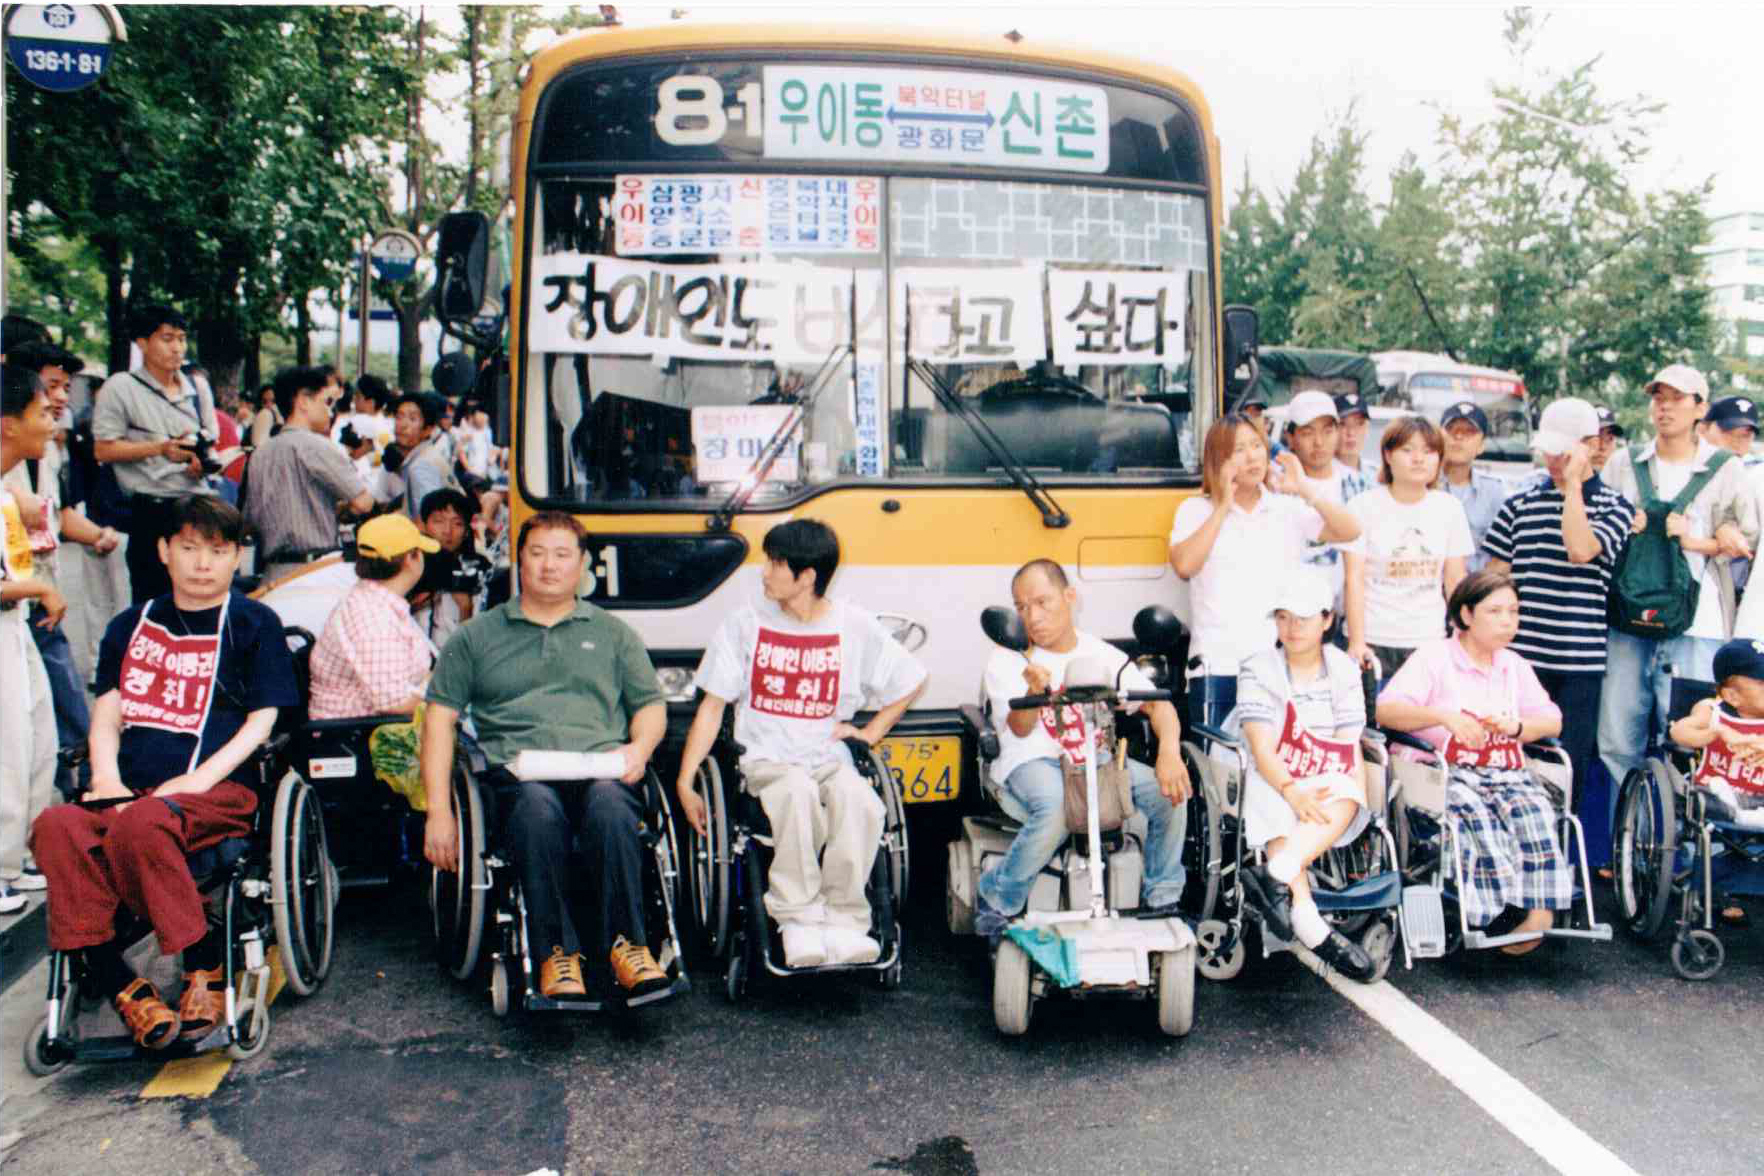 “이동권 투쟁”, 2001년, 노들장애인야간학교